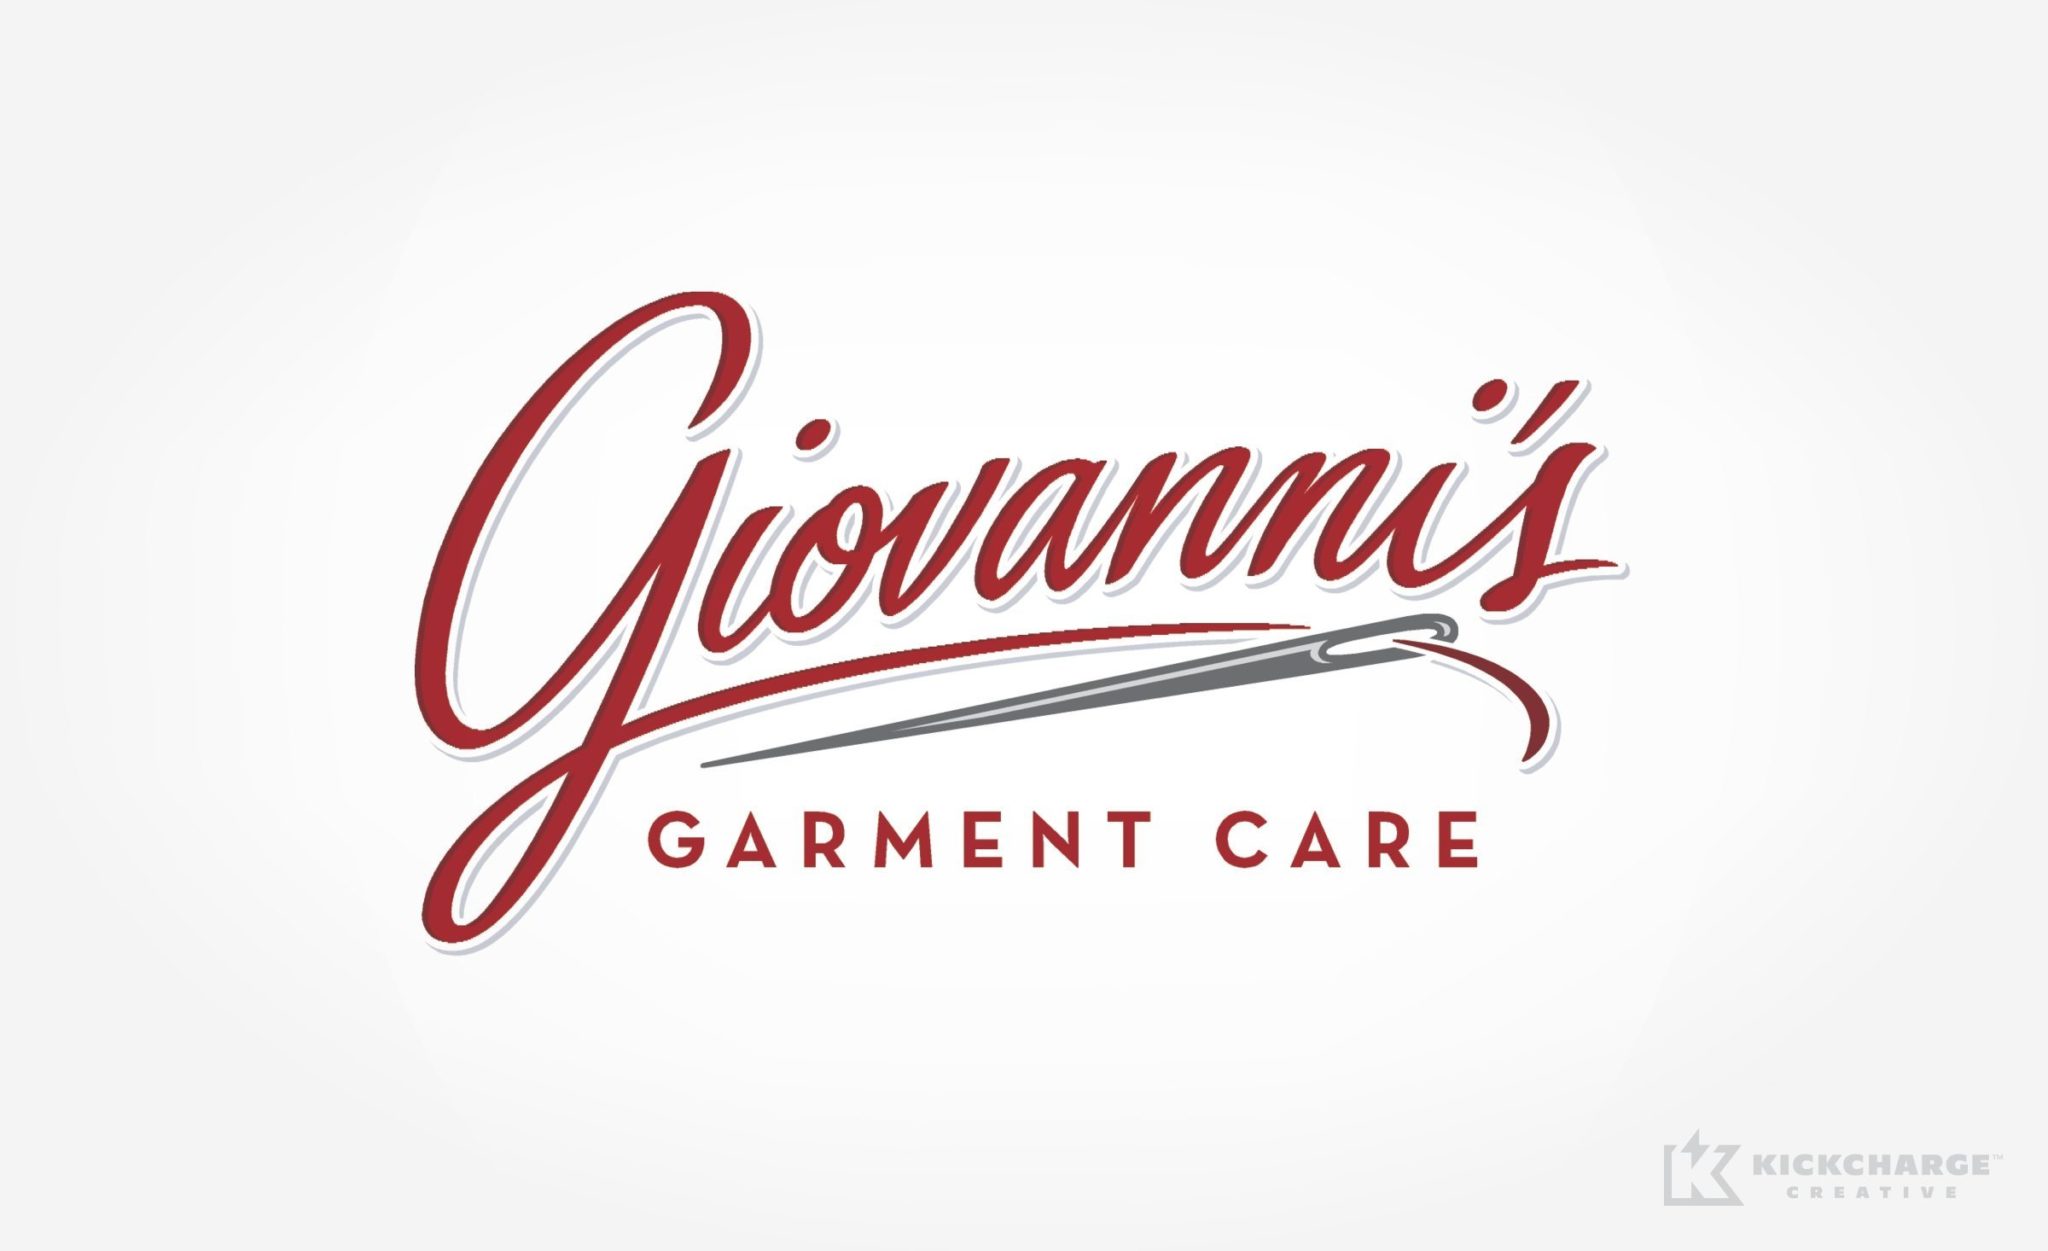 Giovanni's Garment Care